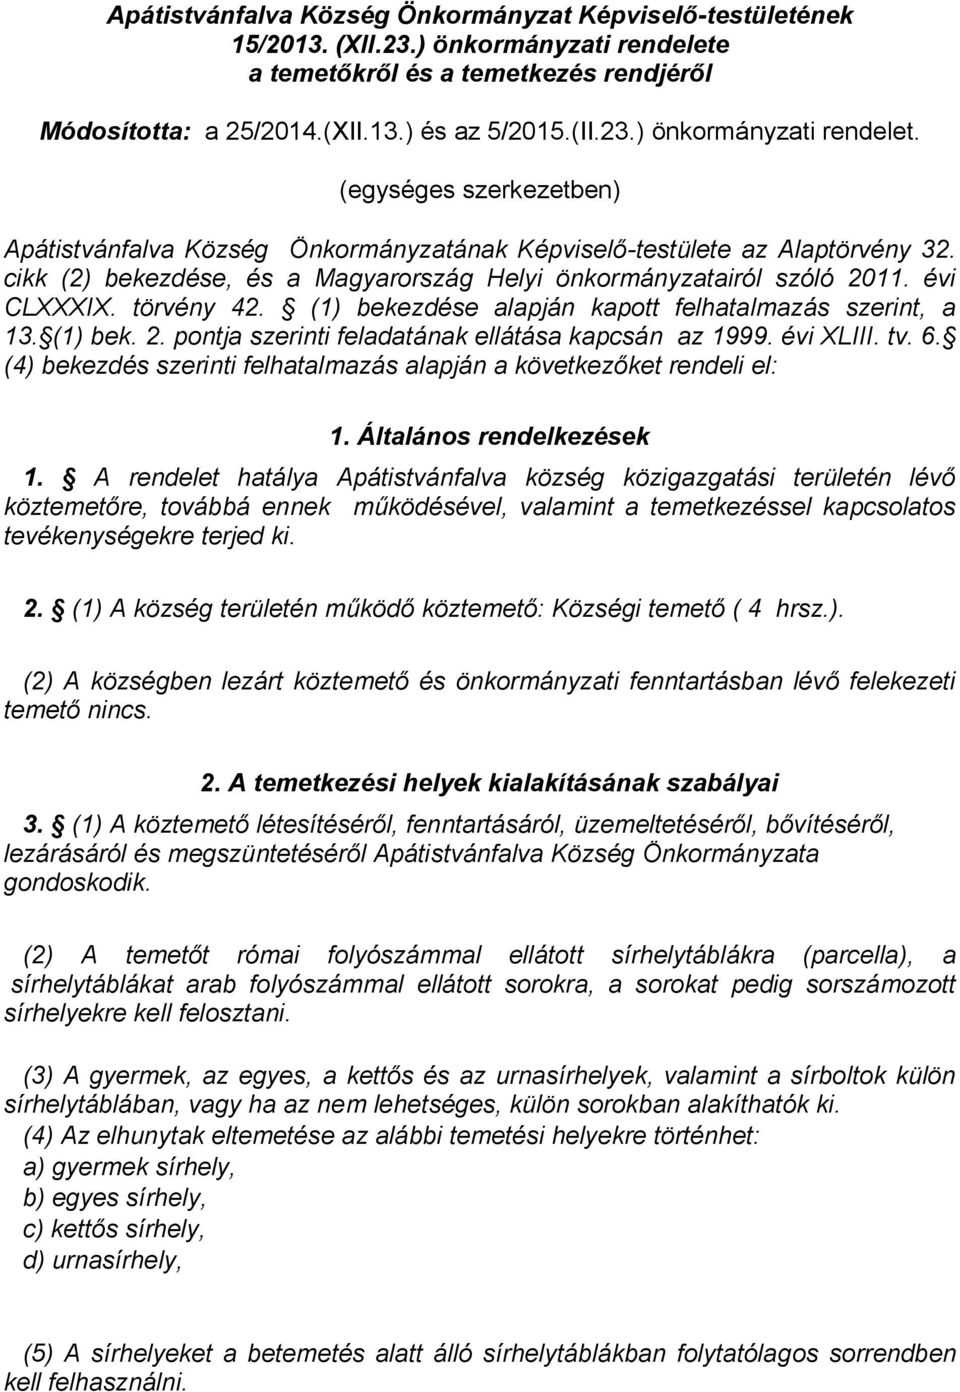 (egységes szerkezetben) Apátistvánfalva Község Önkormányzatának Képviselő-testülete az Alaptörvény 32. cikk (2) bekezdése, és a Magyarország Helyi önkormányzatairól szóló 2011. évi CLXXXIX.